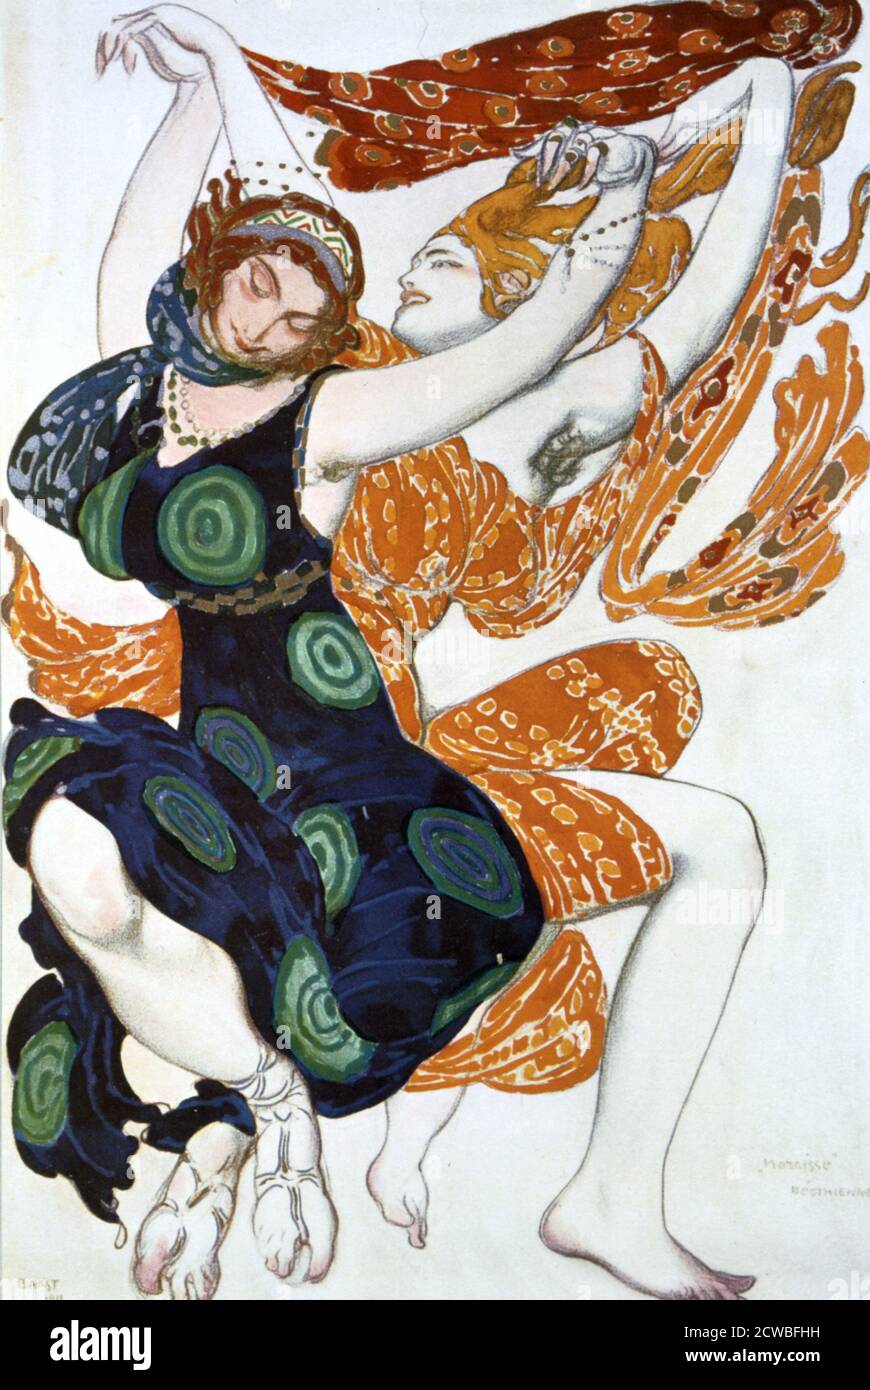 Two Bacchantes', costume design for a Ballets Russes production of Tcherepnin's Narcisse, Artist: Leon Bakst, 1911. Published in L'Art Decoratif de Leon Bakst. (Paris, 1913). From a private collection. Stock Photo